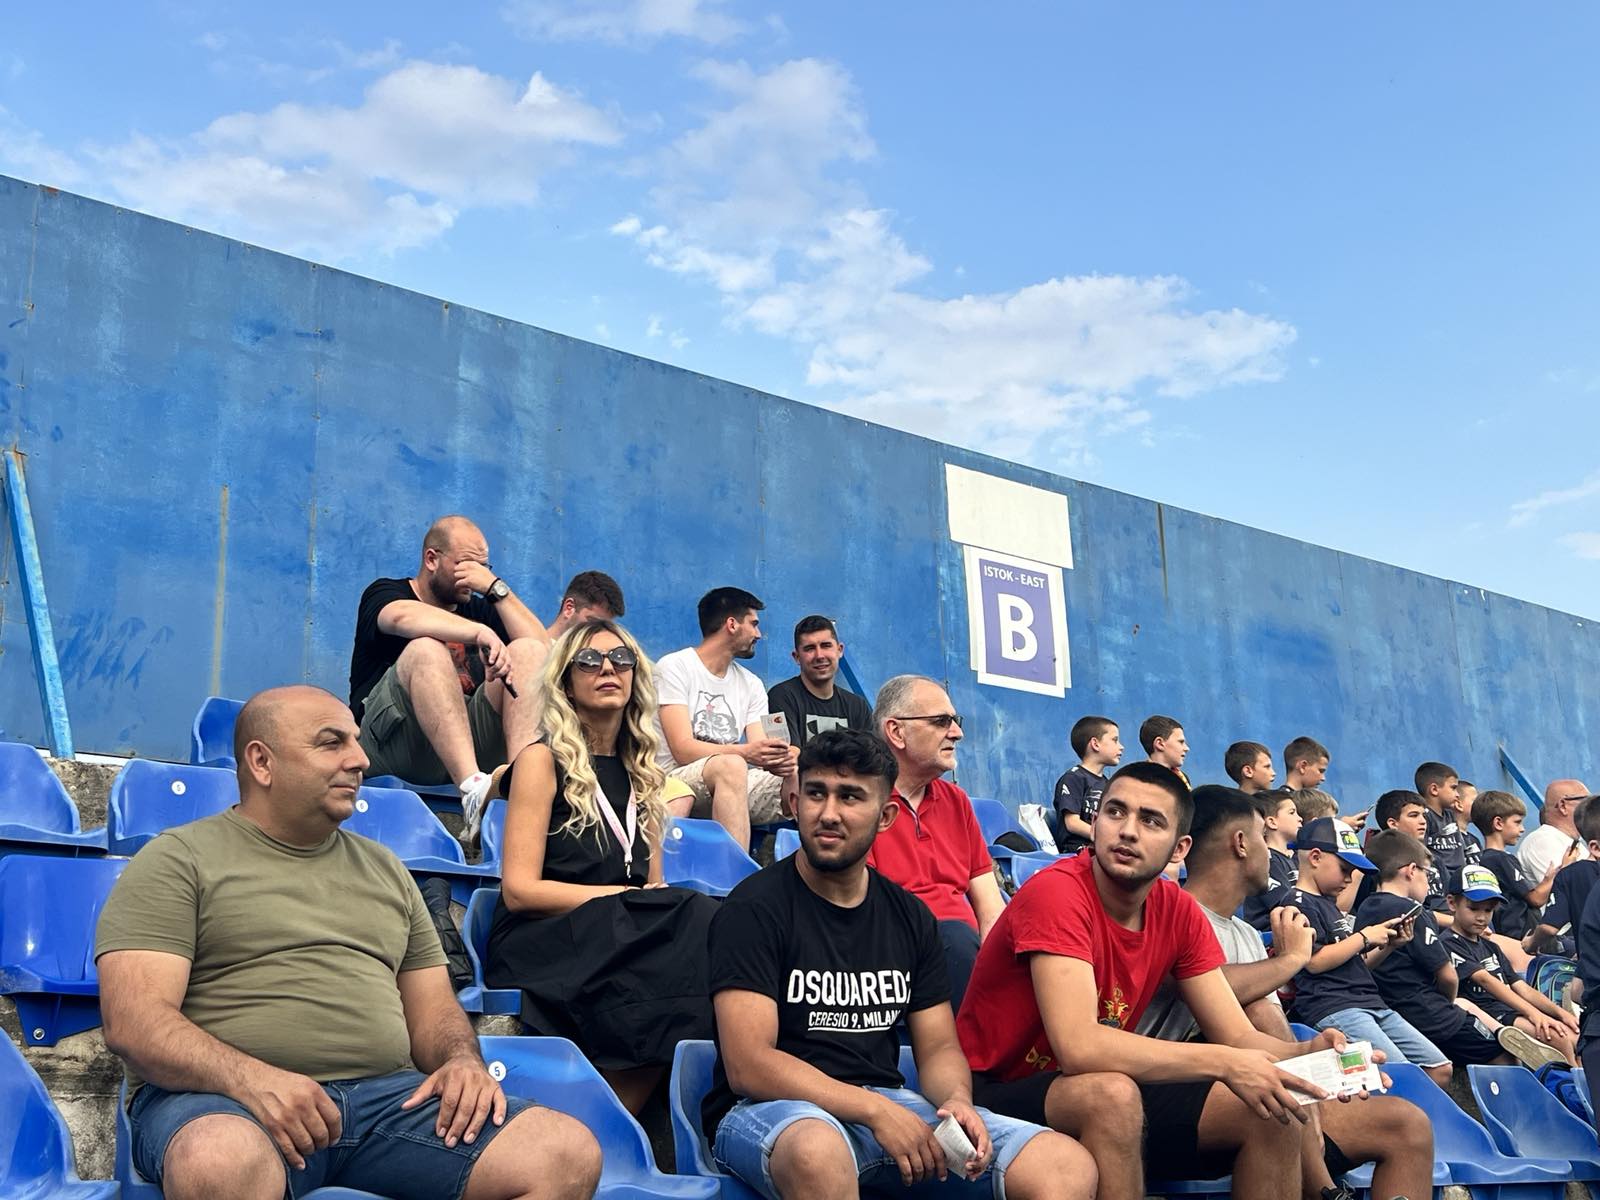 Kancelarija za RE kontinuirano radi na socijalnoj inkluziji;  U saradnji sa Fudbalskim savezom Crne Gore obezbijeđene besplatne karte za pripadnike RE zajednice za meč Crna Gora – Češka